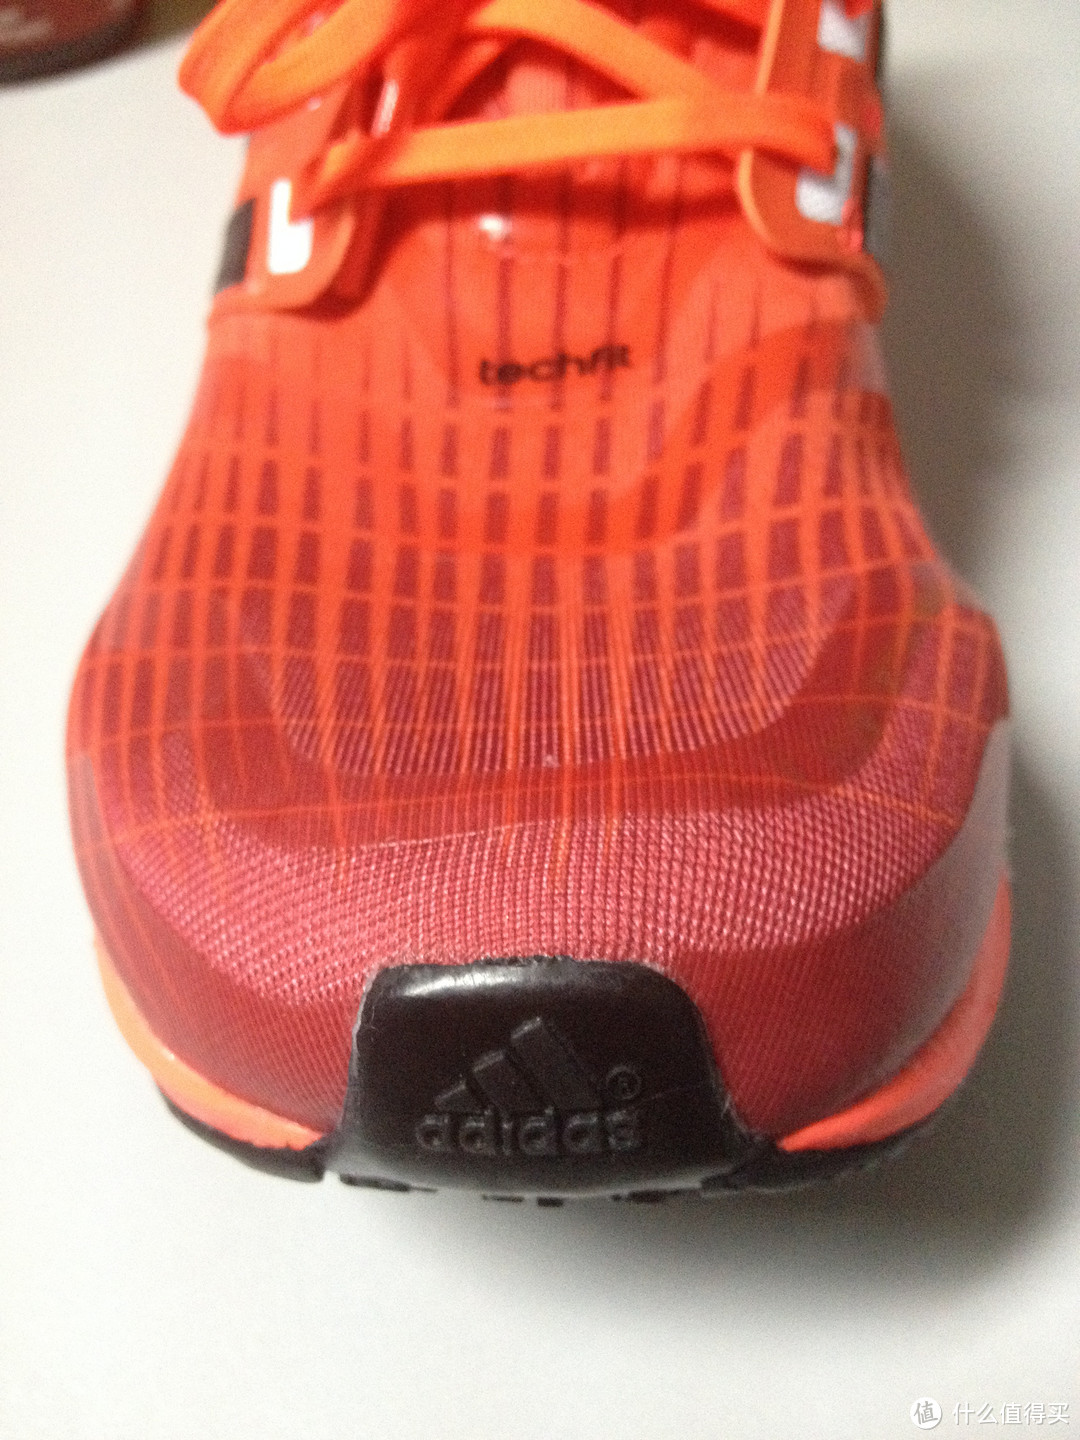 adidas 阿迪达斯 energy boost m 骚橙男款跑鞋